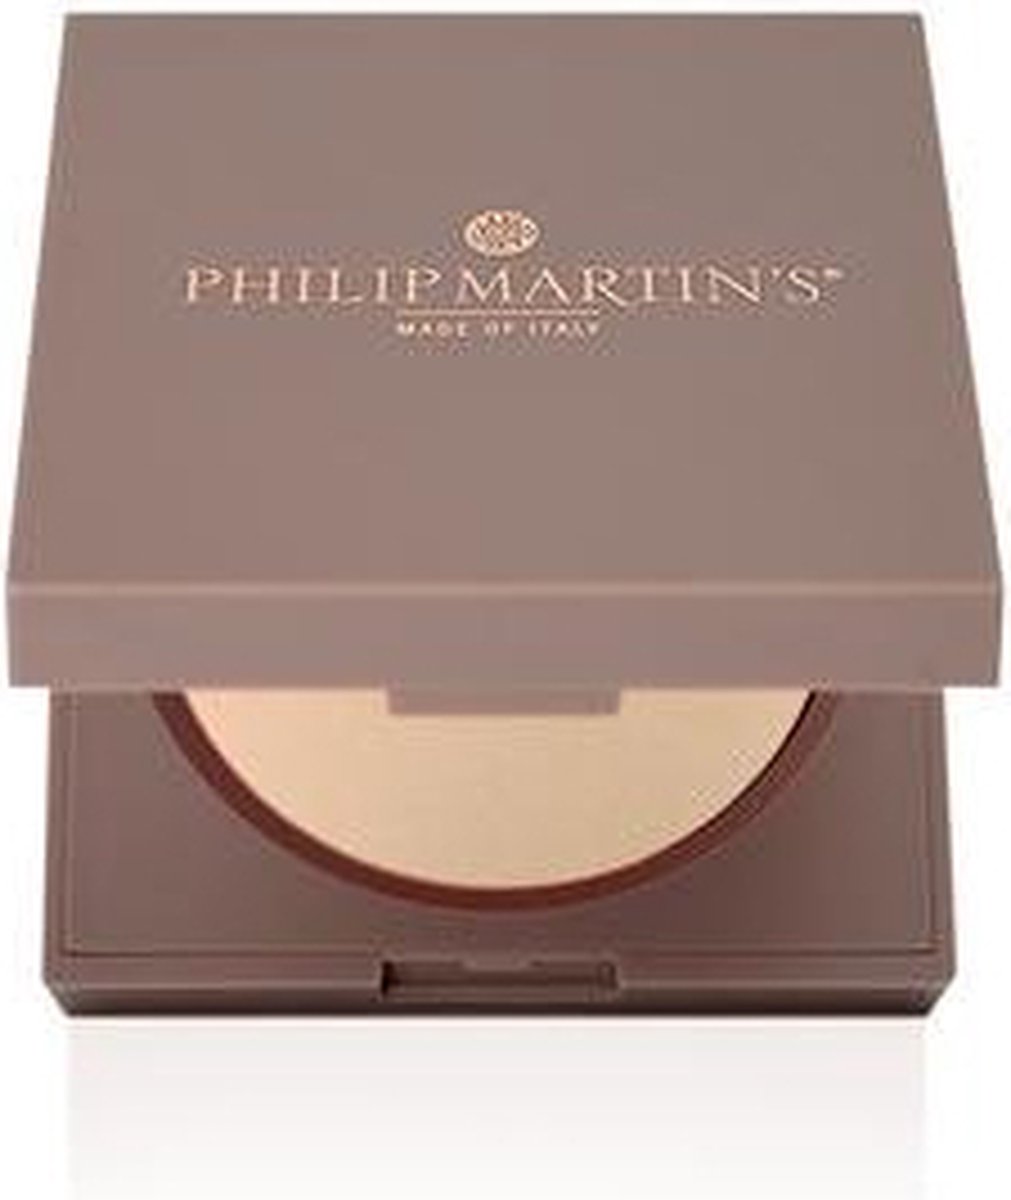 Philip Martin's - Make-up - Bronzing Powder 601